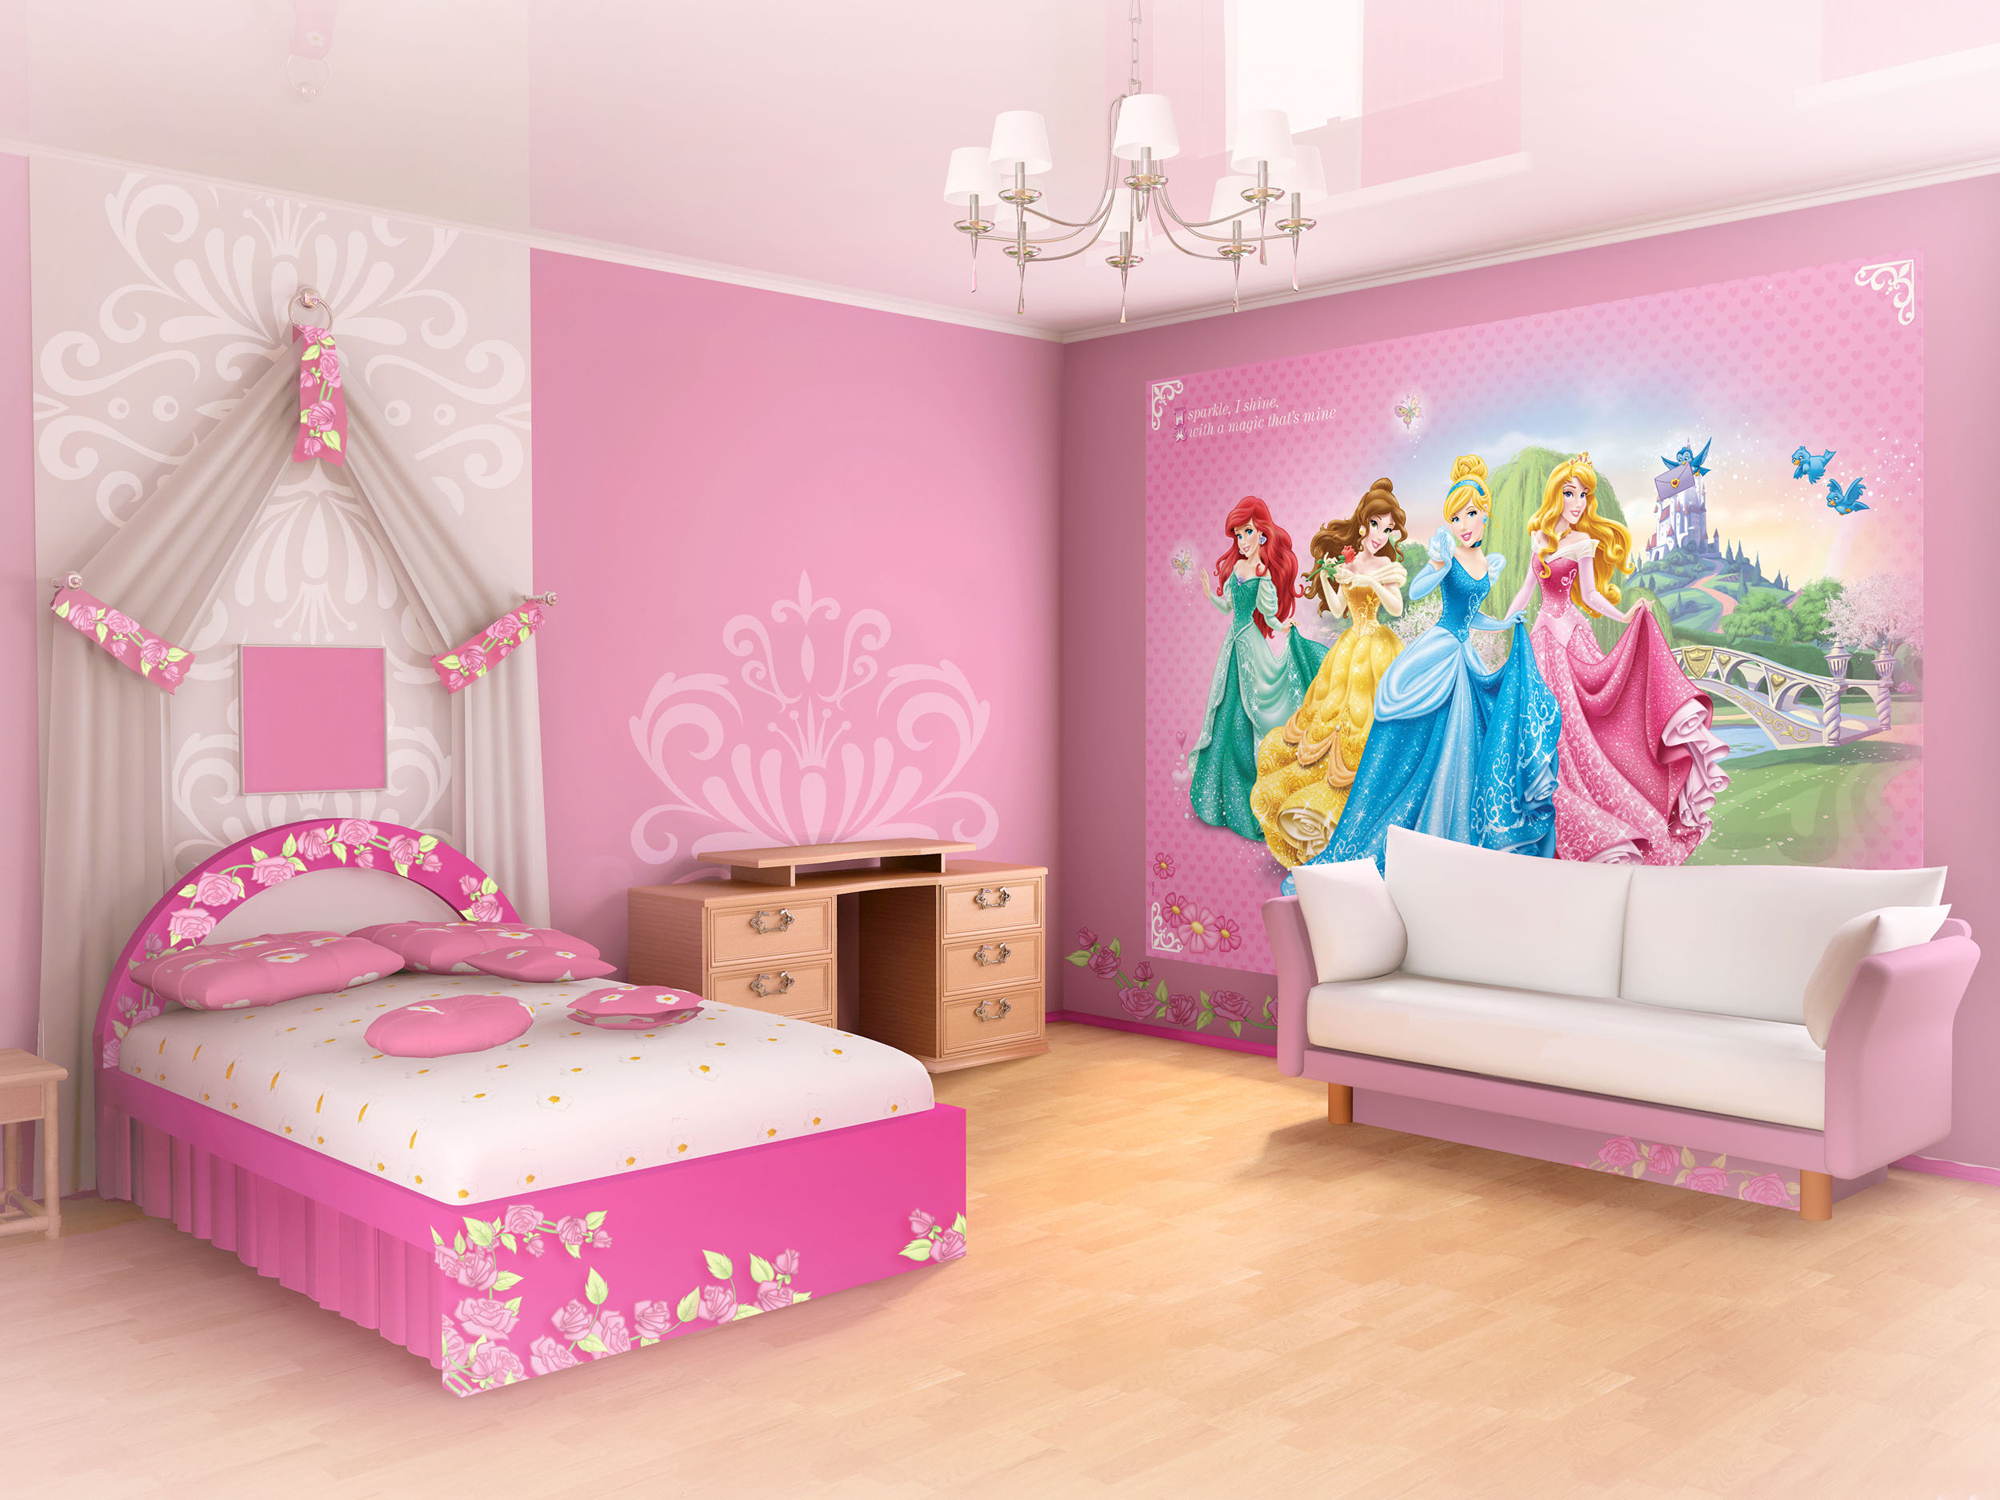 Детская принцесса. Комната принцессы. Фотообои в детскую девочке 10 лет. Детская комната с принцессами Дисней. Фотообои в детскую для девочки принцессы.